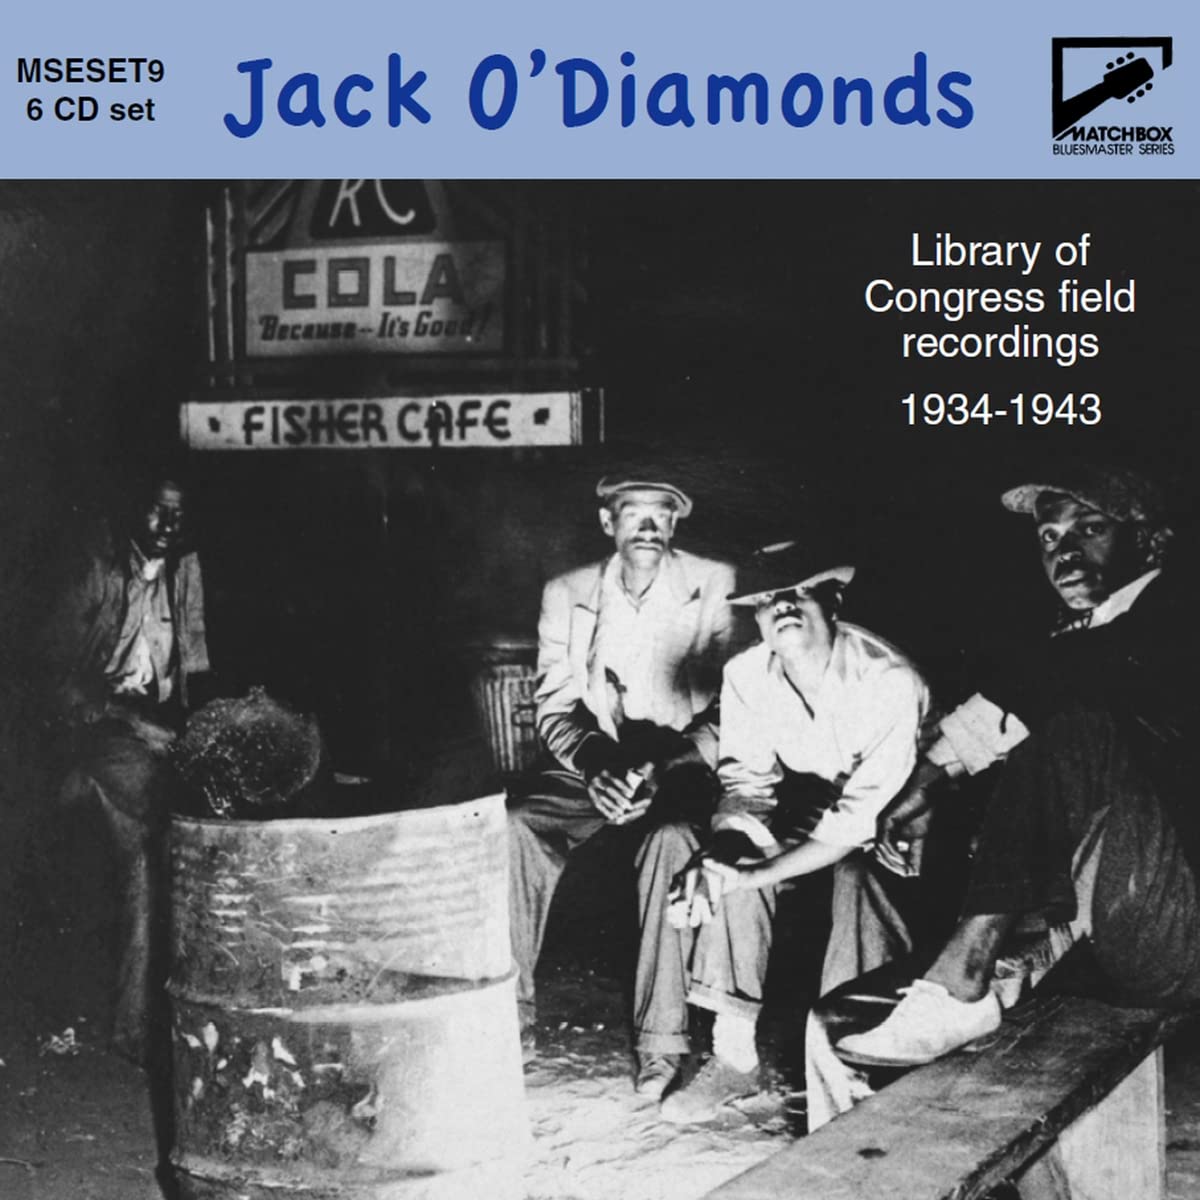 Audio Cd Jack O' Diamonds: Matchbox Bluesmaster Series Set 9 / Various (6 Cd) NUOVO SIGILLATO, EDIZIONE DEL 11/10/2022 SUBITO DISPONIBILE